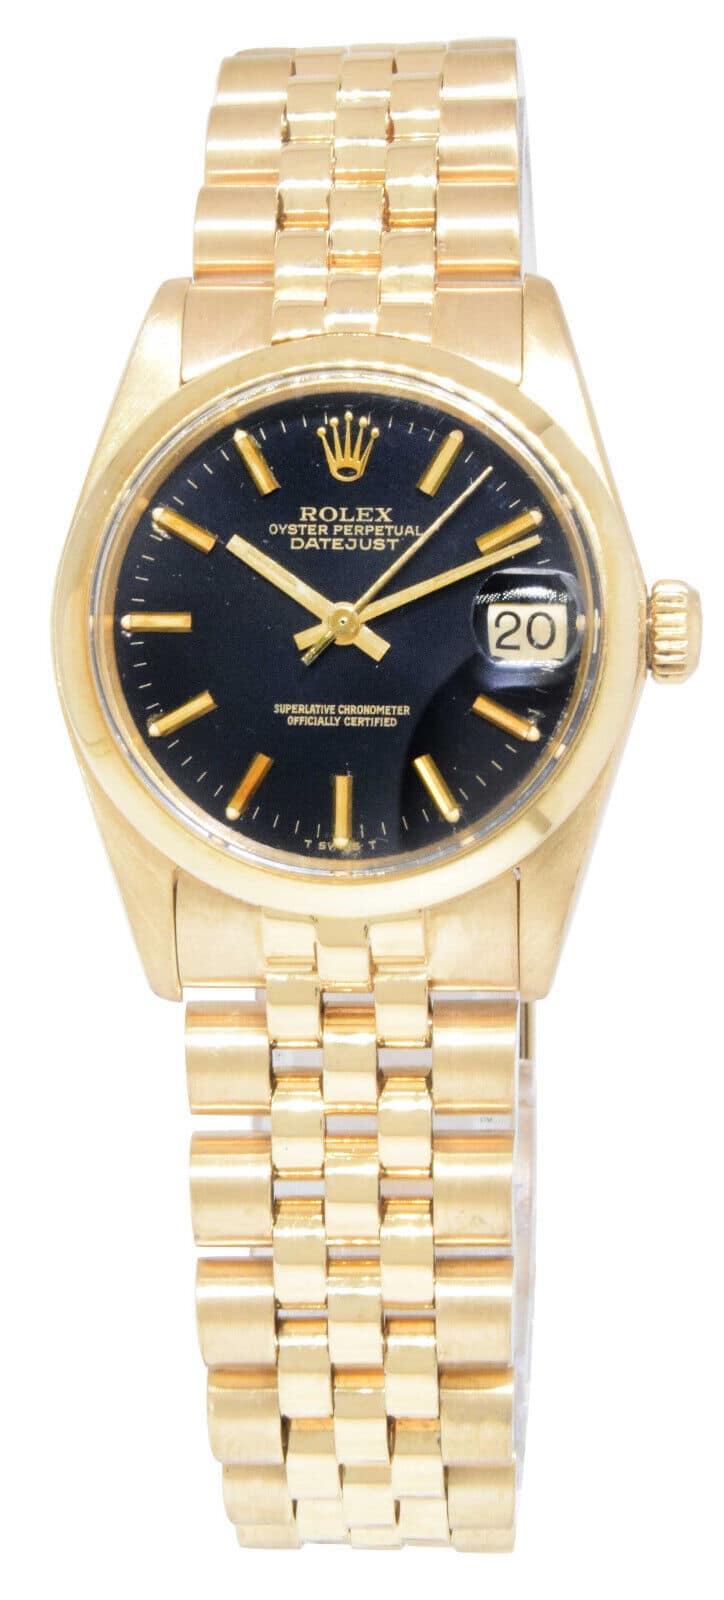 Vintage Rolex Datejust Two Tone Watch in Jubilee Bracelet | Ref. 1601 –  ASSAY